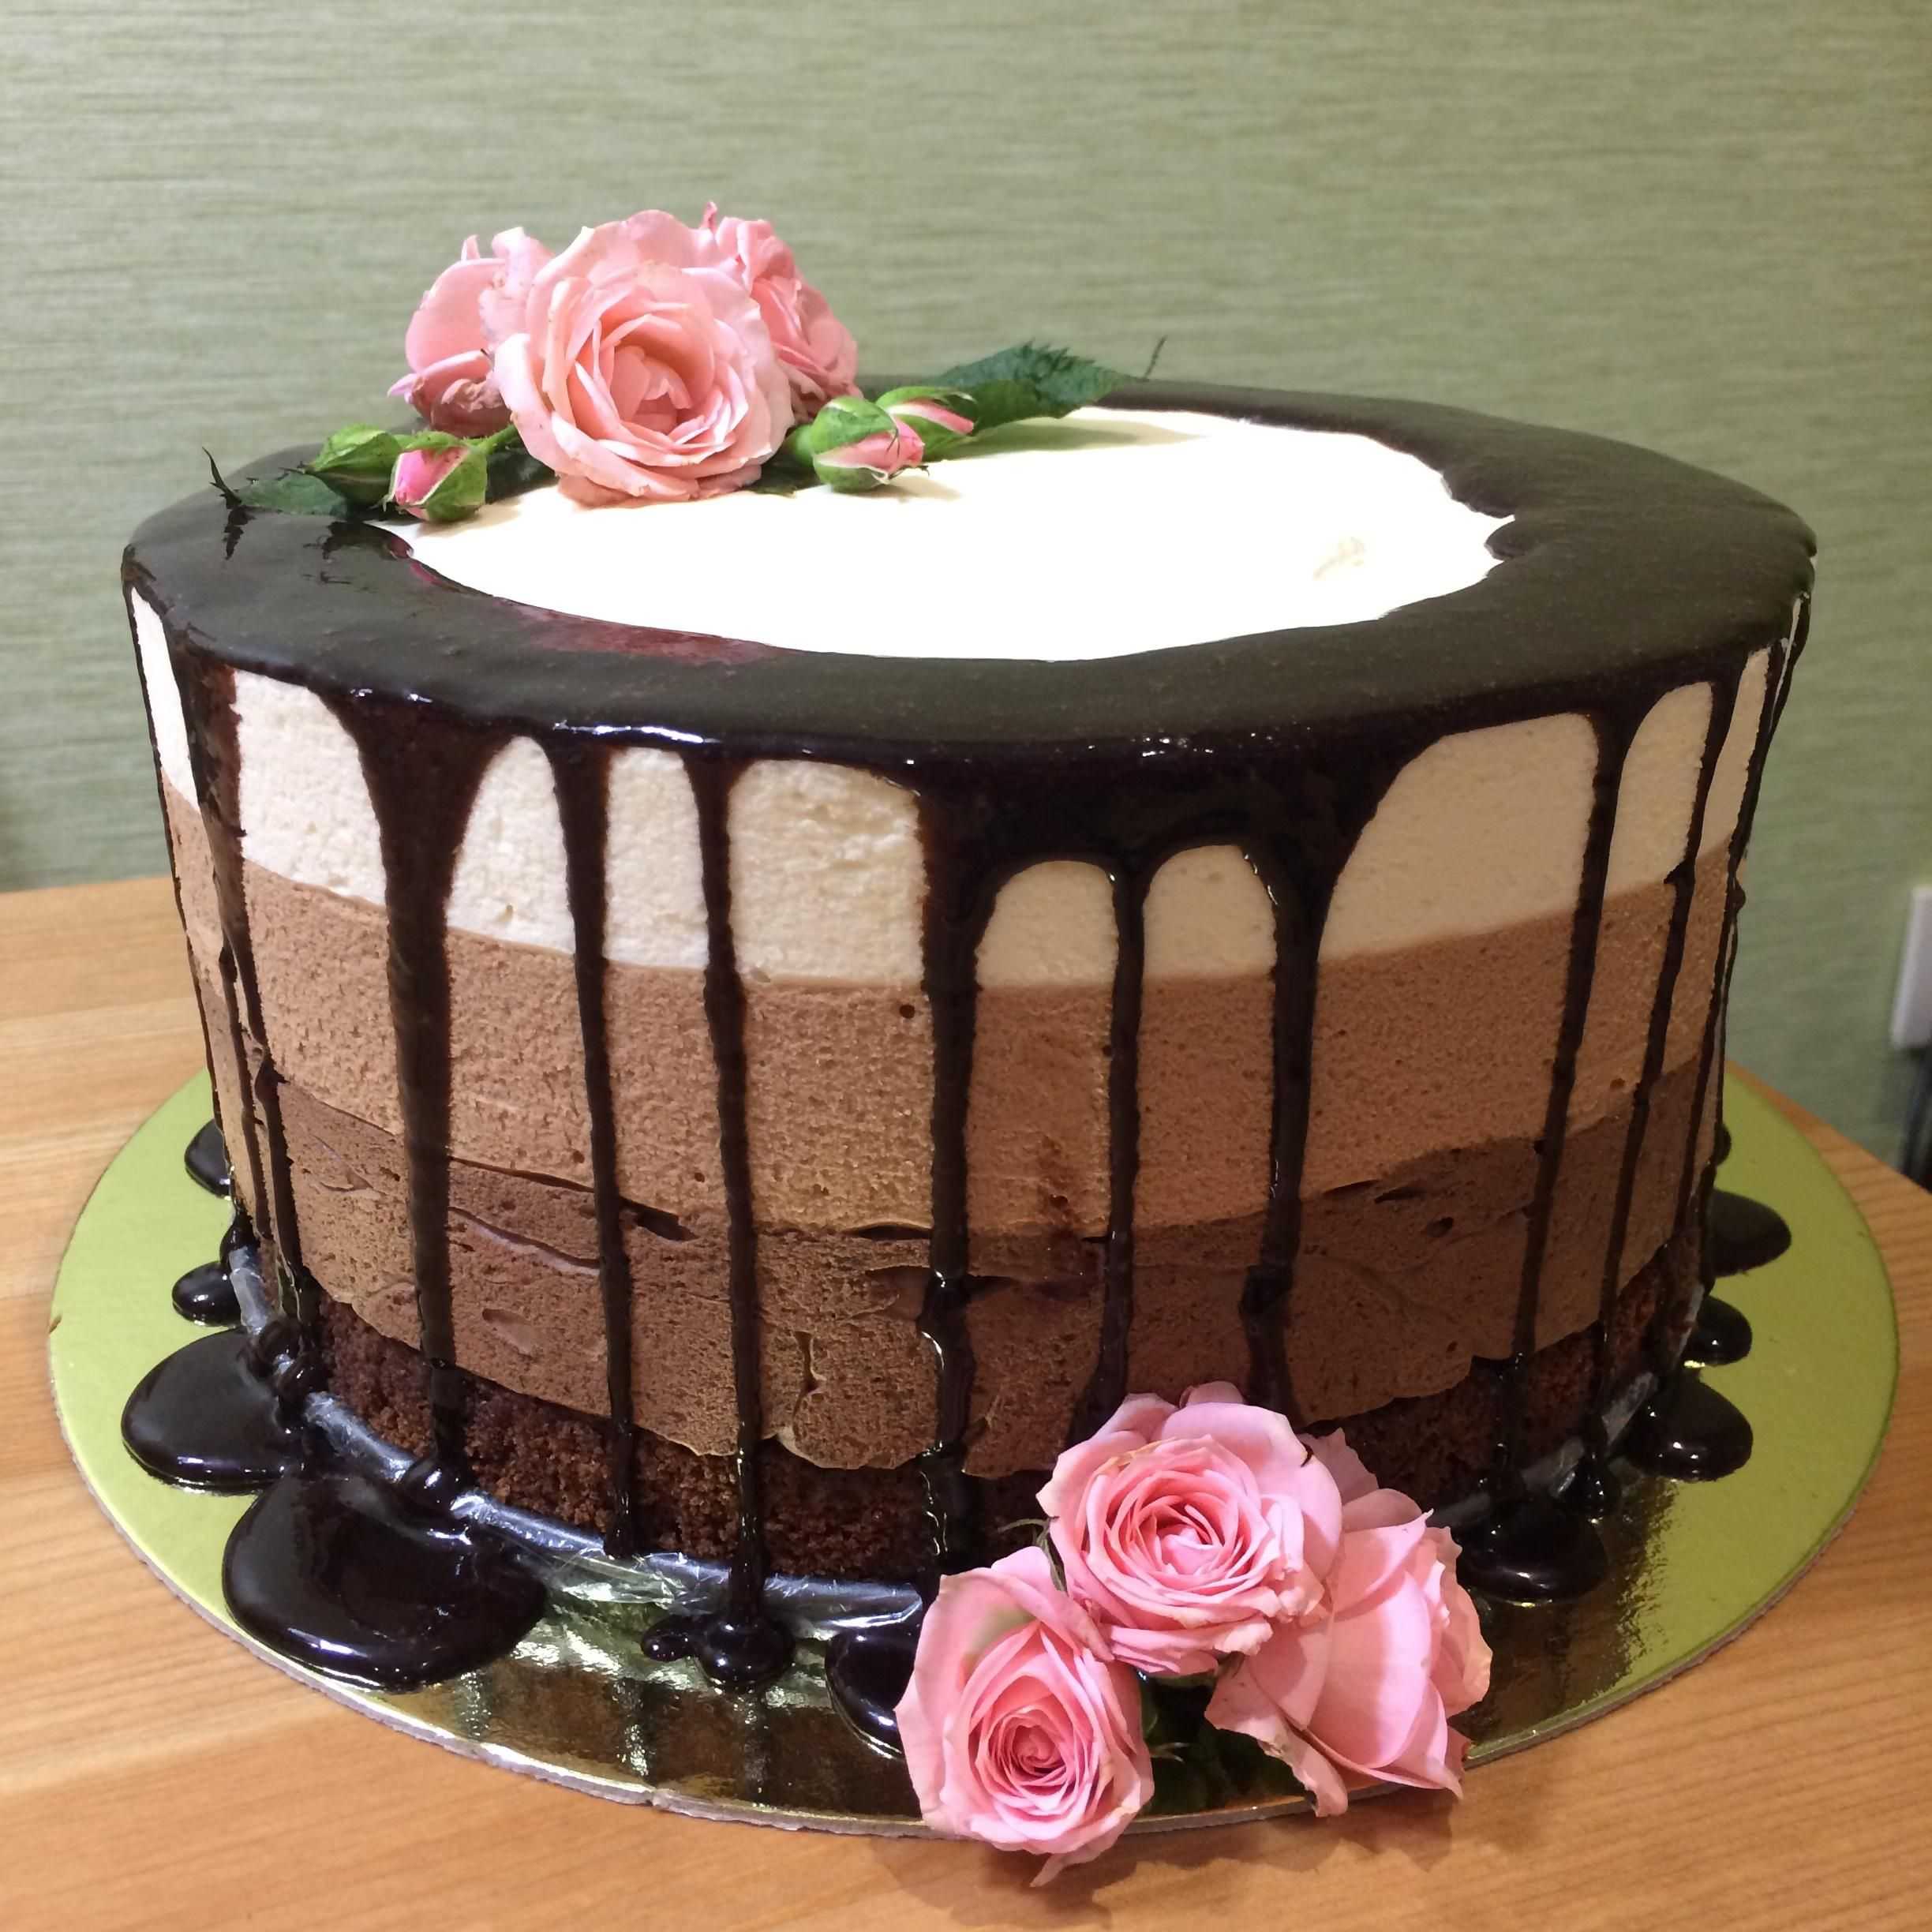 Торт «три шоколада» – рецепт в домашних условиях, как приготовить, украсить?